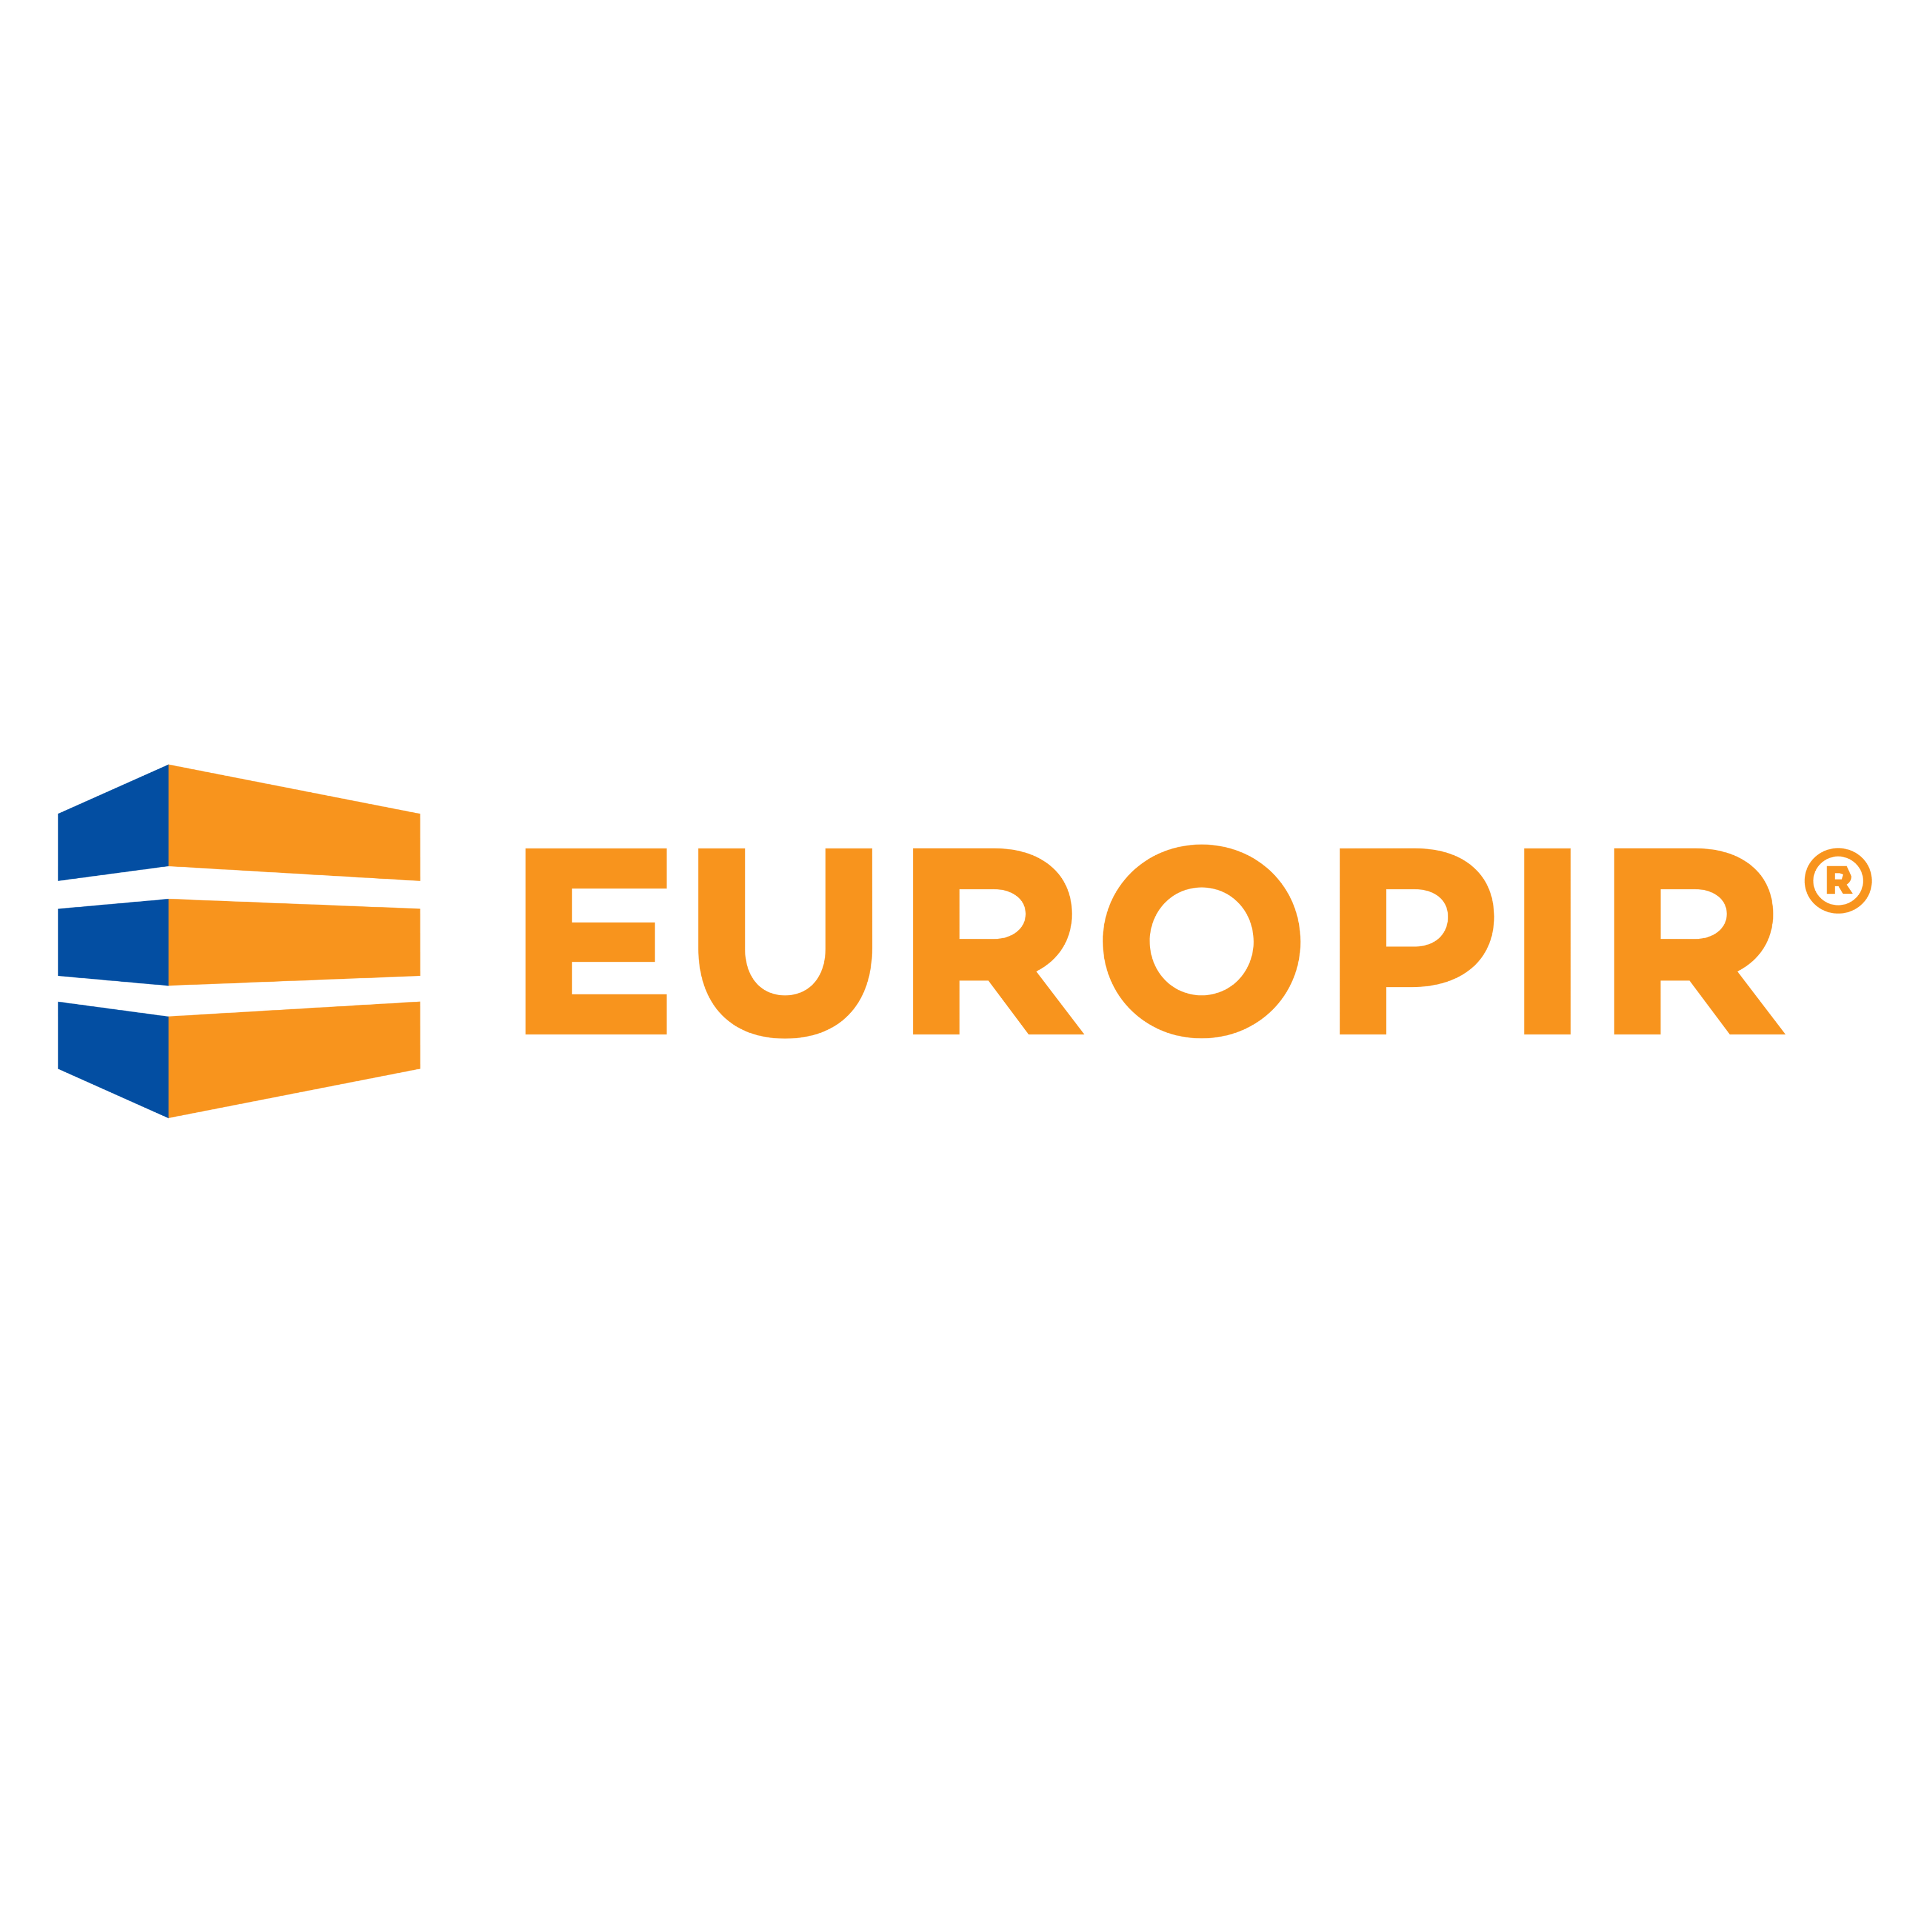 EUROPIR